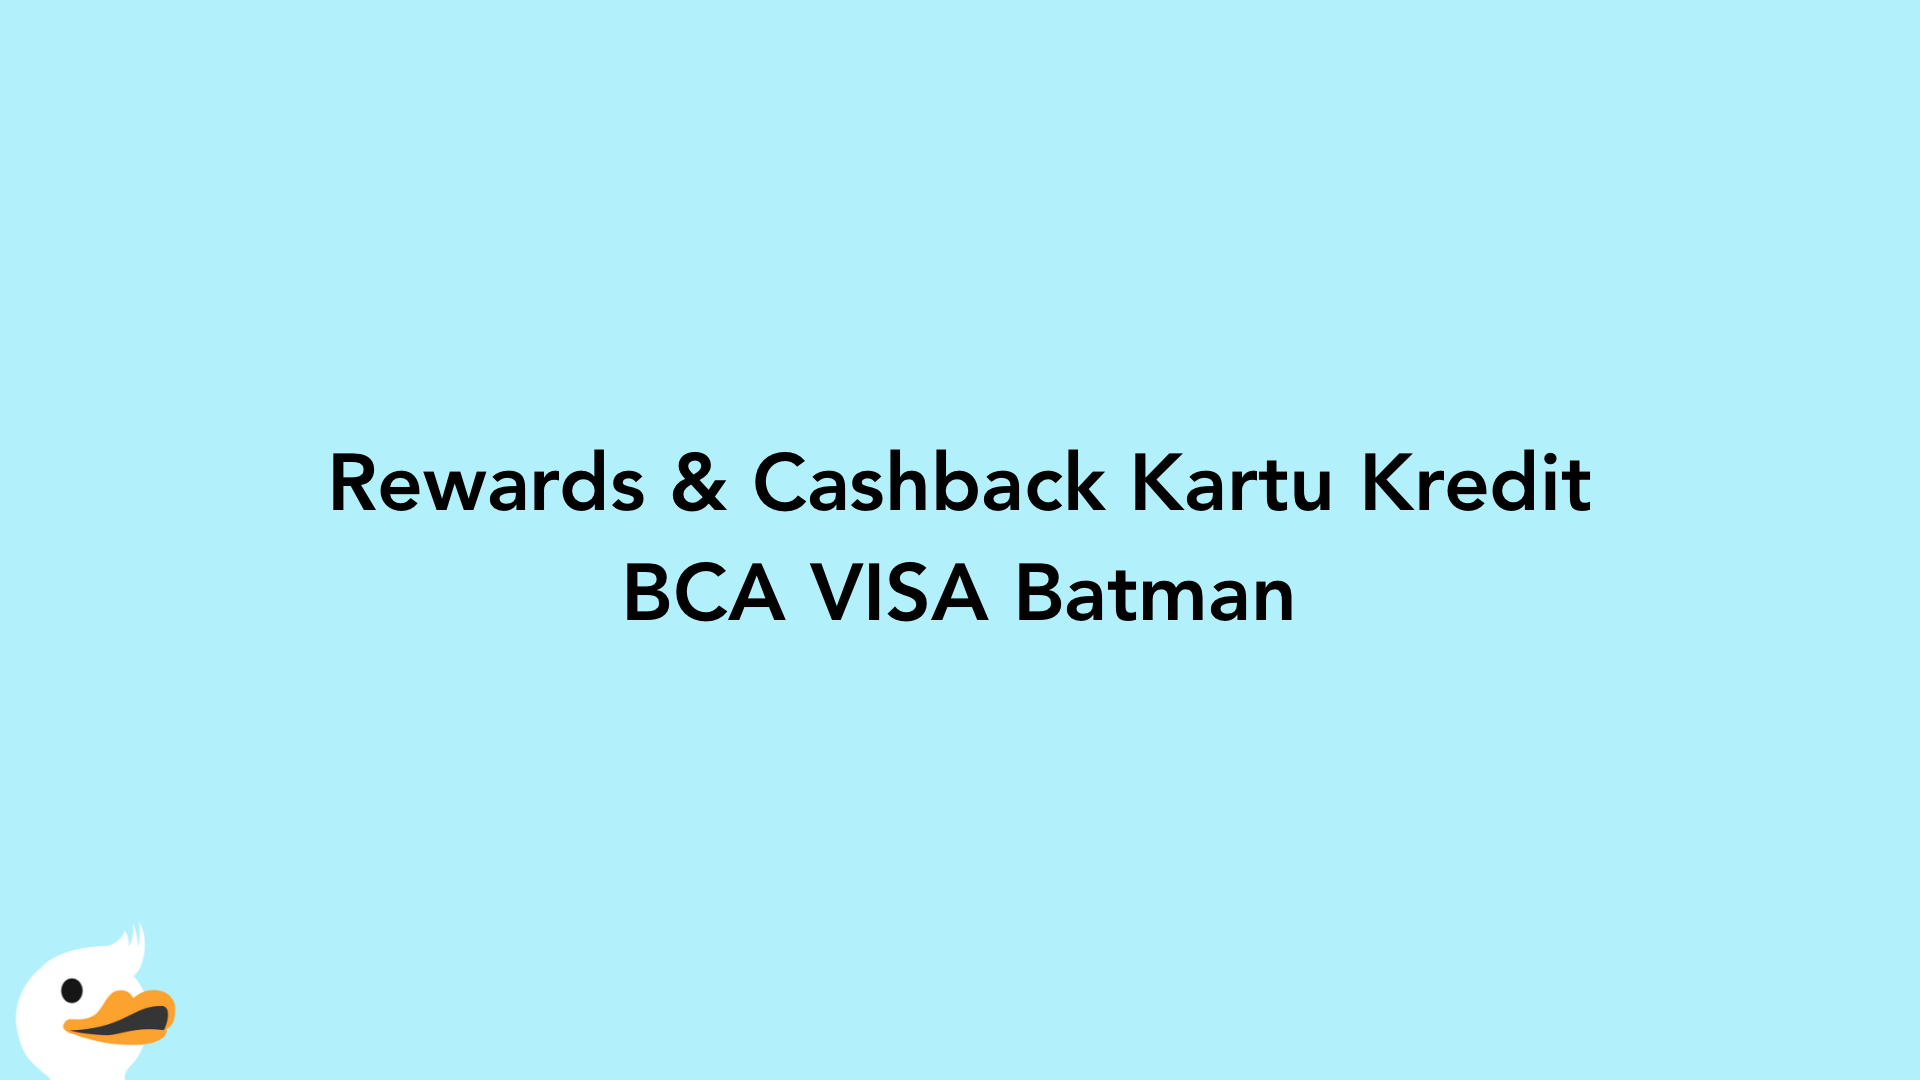 Rewards & Cashback Kartu Kredit BCA VISA Batman